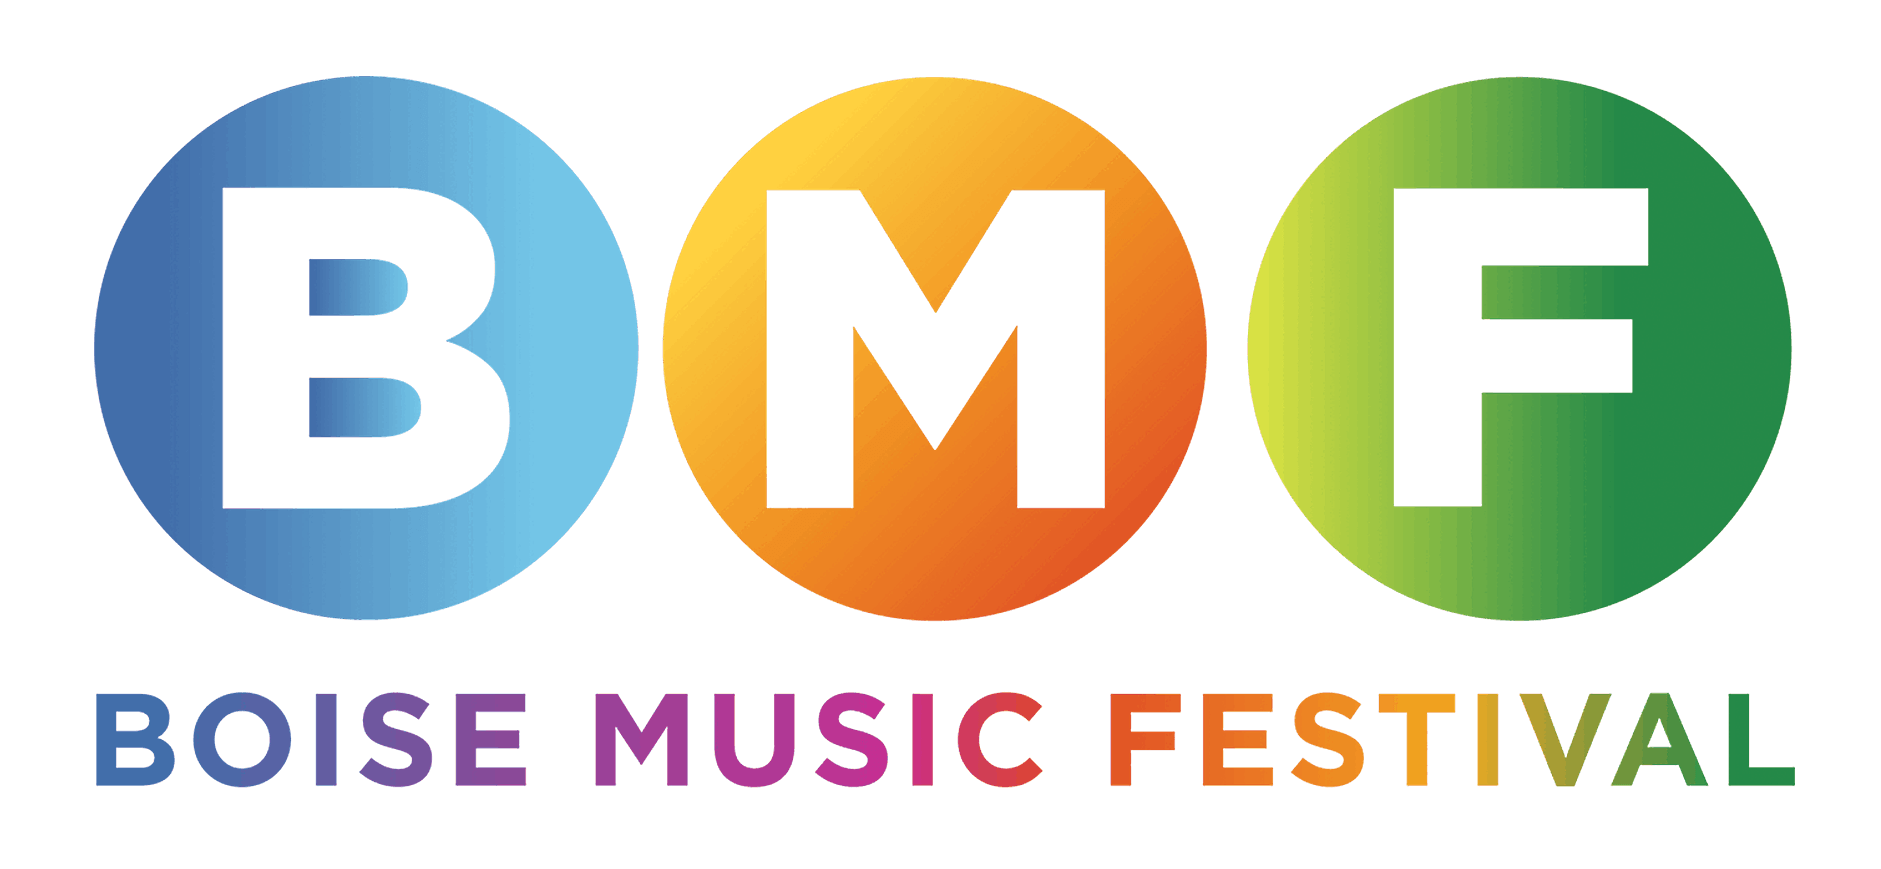 BMF Logo - Boise Music Festival